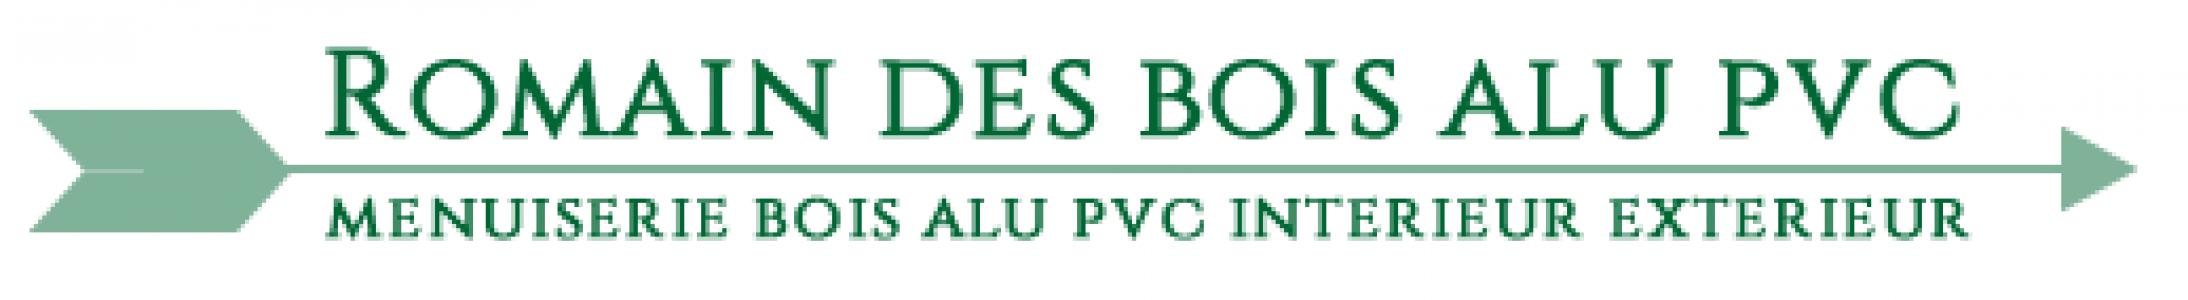 Logo de Robert Pantel Romain des bois alu pvc